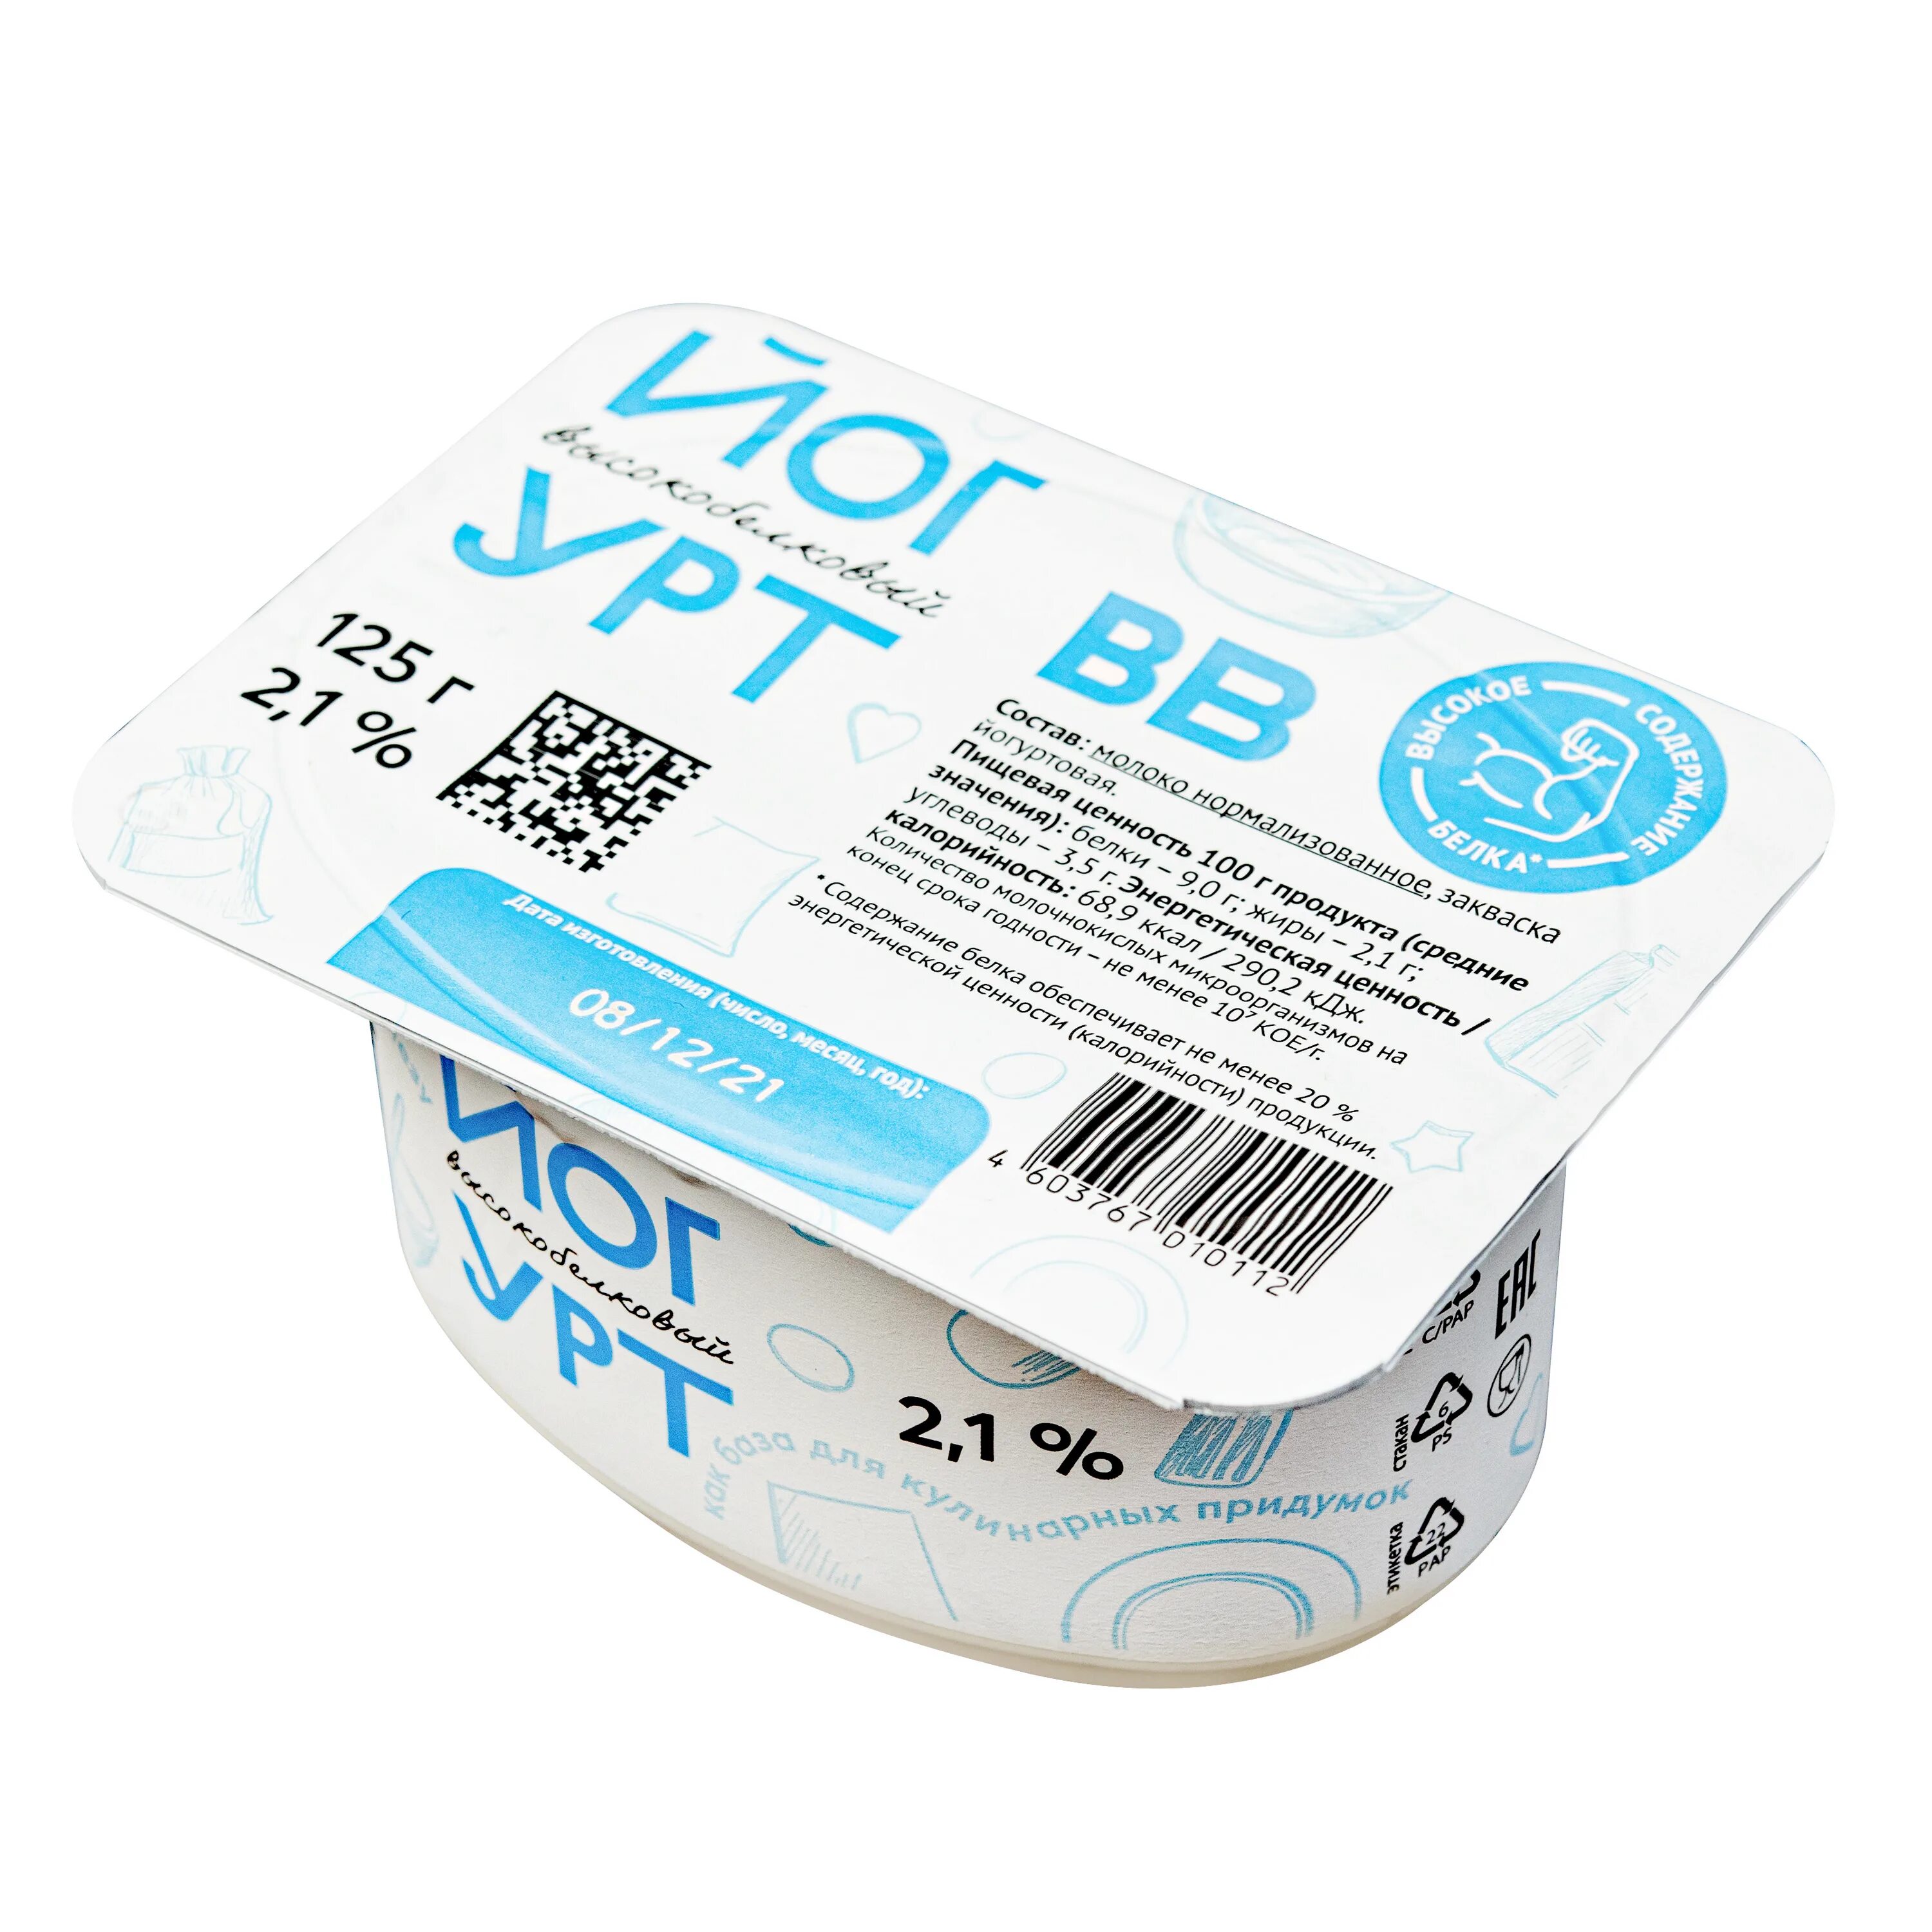 ВКУСВИЛЛ йогурт высокобелковый 2.1. Высокобелковый йогурт ВКУСВИЛЛ 2.1 калорийность. Йогурт высокобелковый ВКУСВИЛЛ. Йогурт высокобелковый 2.1 МОЛКОМ.